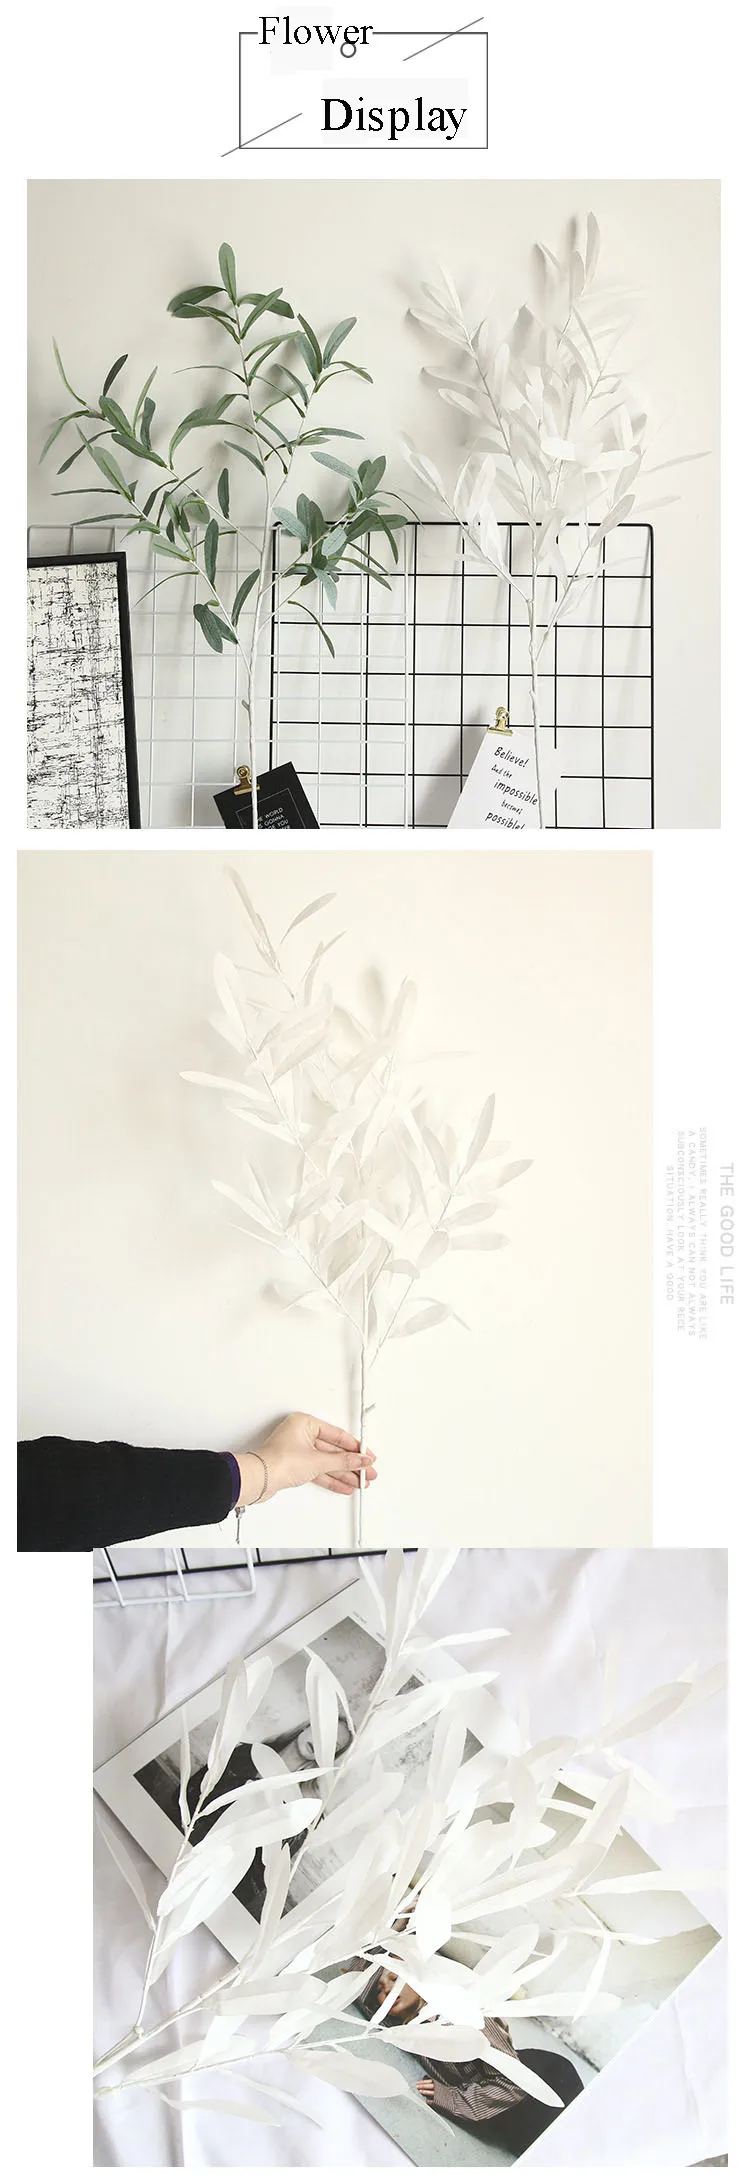 5 шт./лот моделирование лист ивы филиал букет украшение для дома искусственный оливковых листьев свадебные декорации цветок поддельные